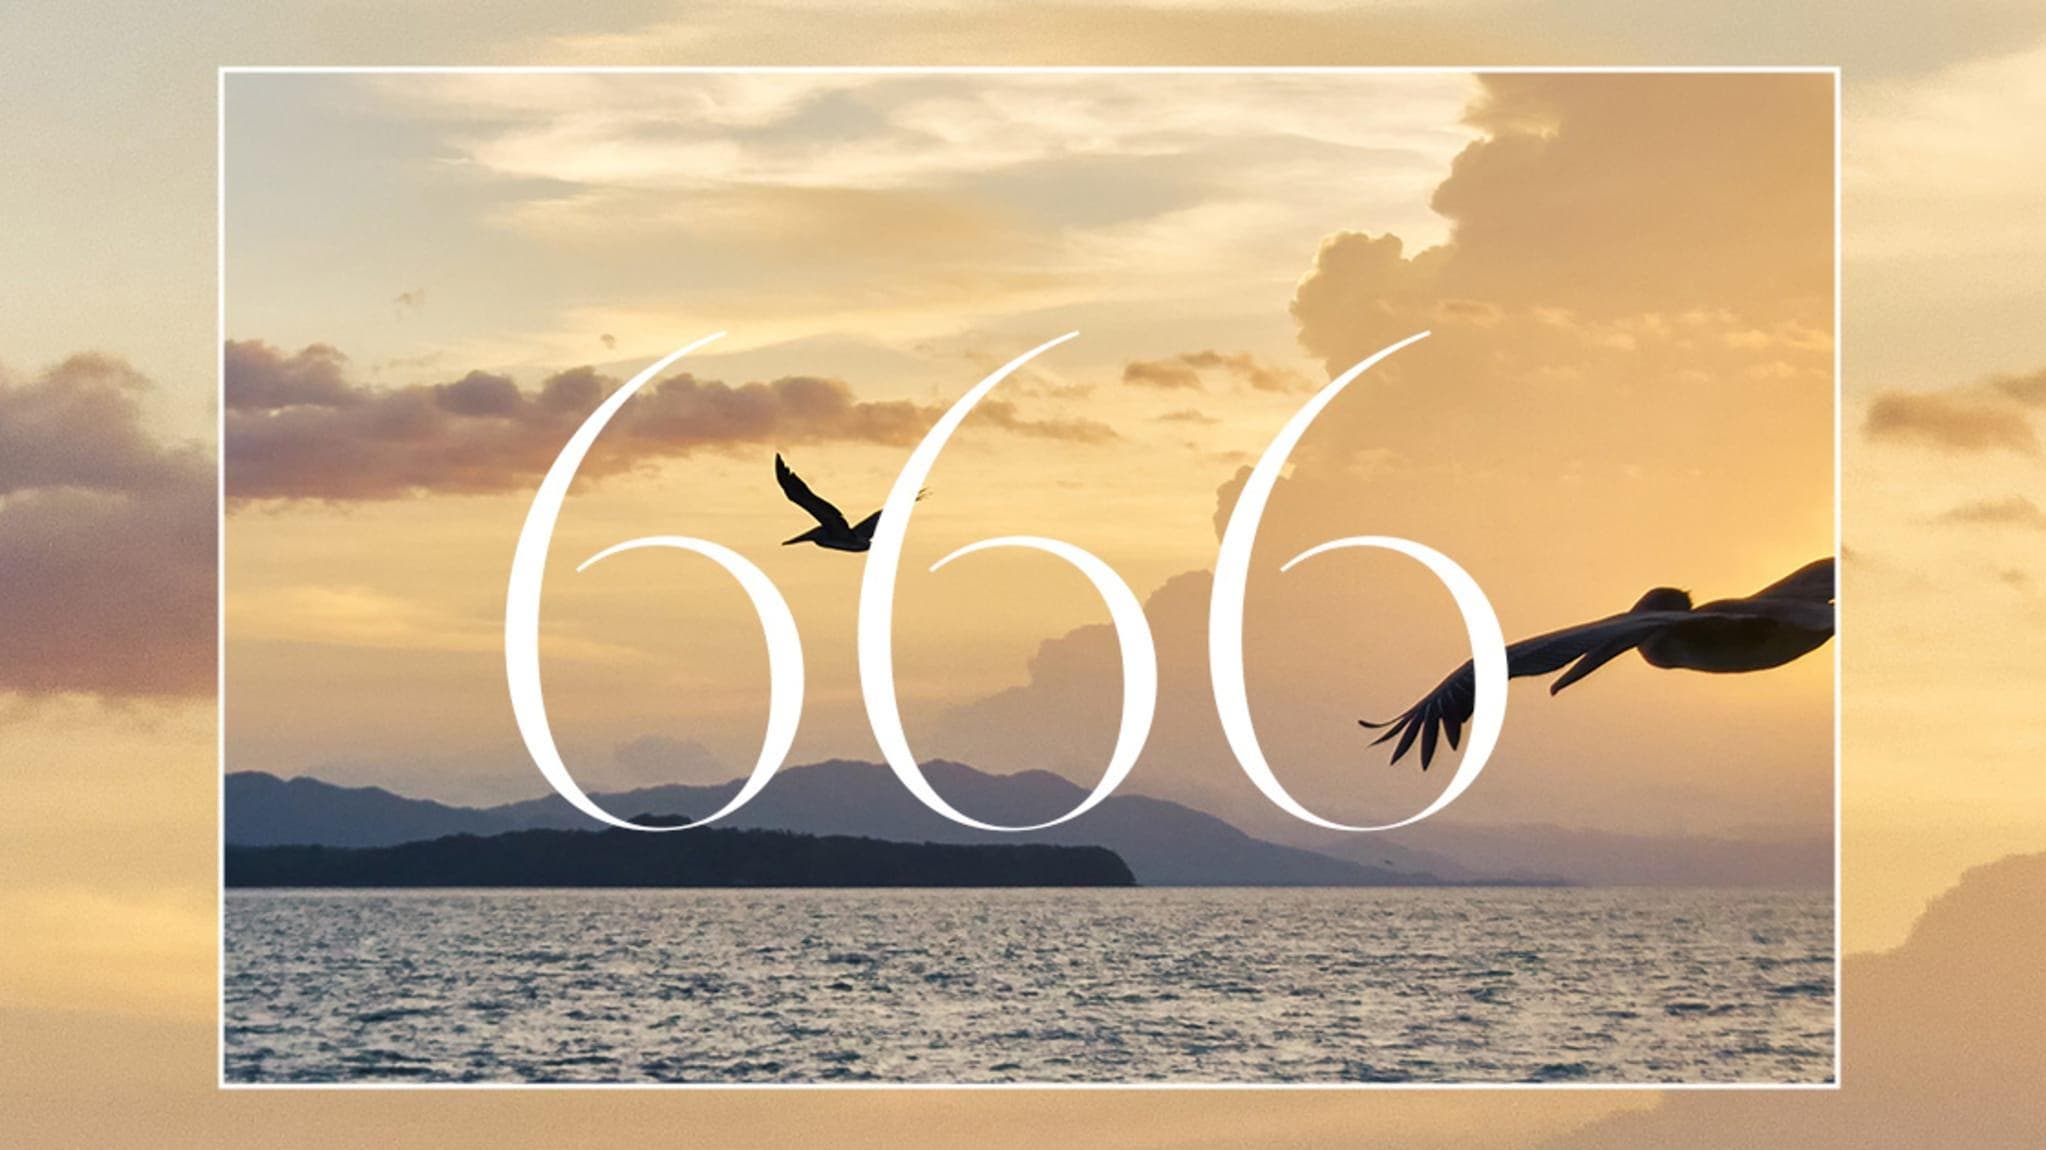 Le nombre angélique 666